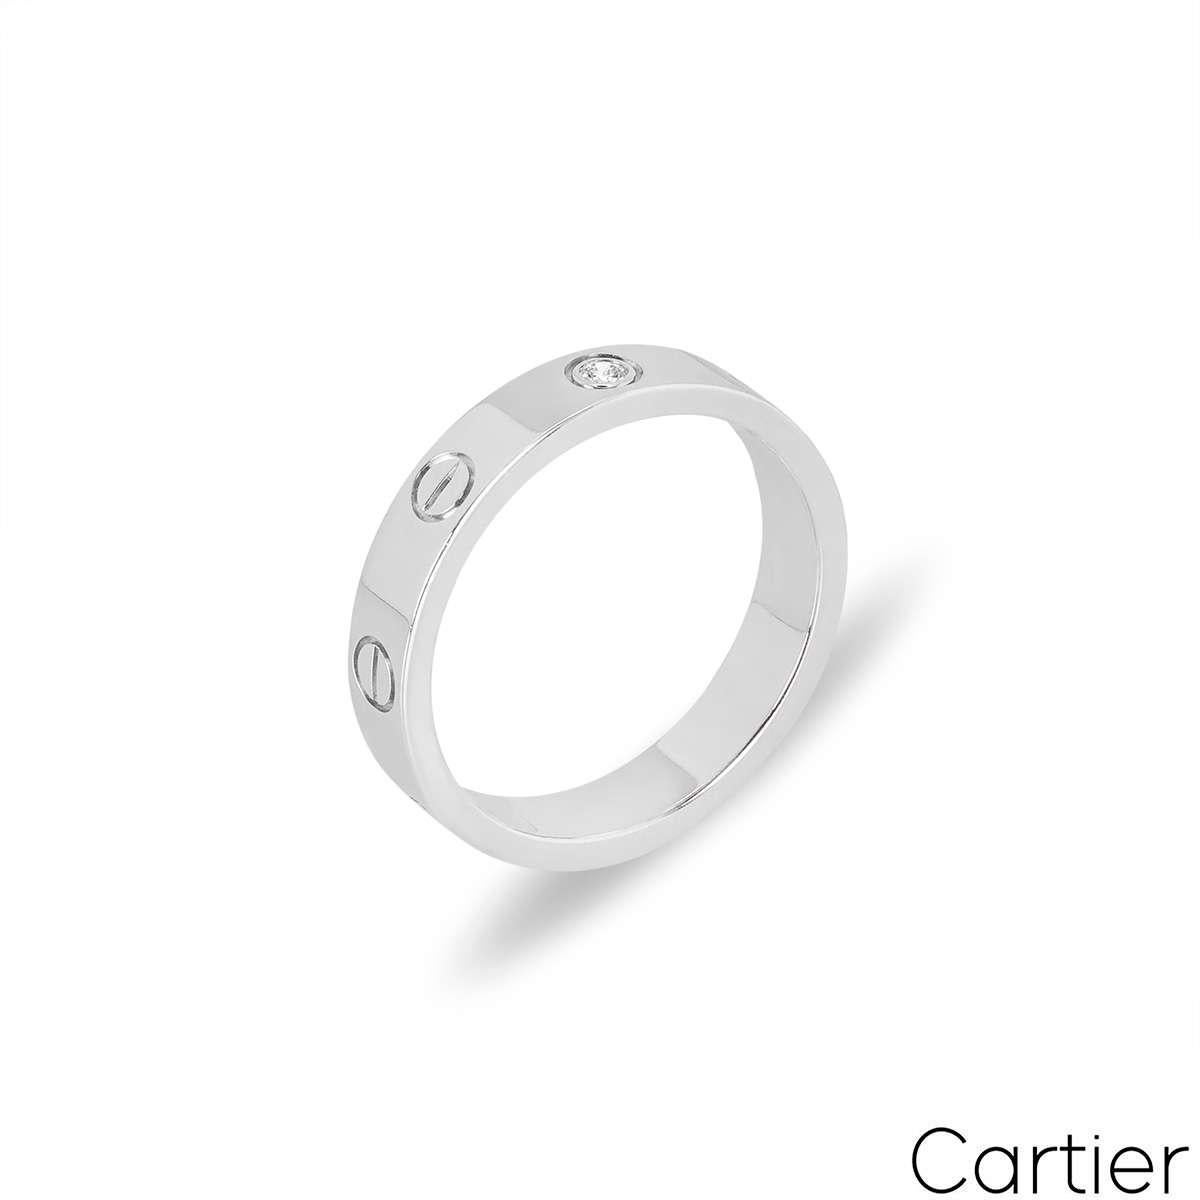 Ein diamantener Ehering von Cartier aus Weißgold aus der Collection'S Love. Er besteht aus den ikonischen Cartier-Schrauben und einem einzelnen runden Diamanten im Brillantschliff in der Mitte, der insgesamt 0,02ct. Mit einer Breite von 4 mm